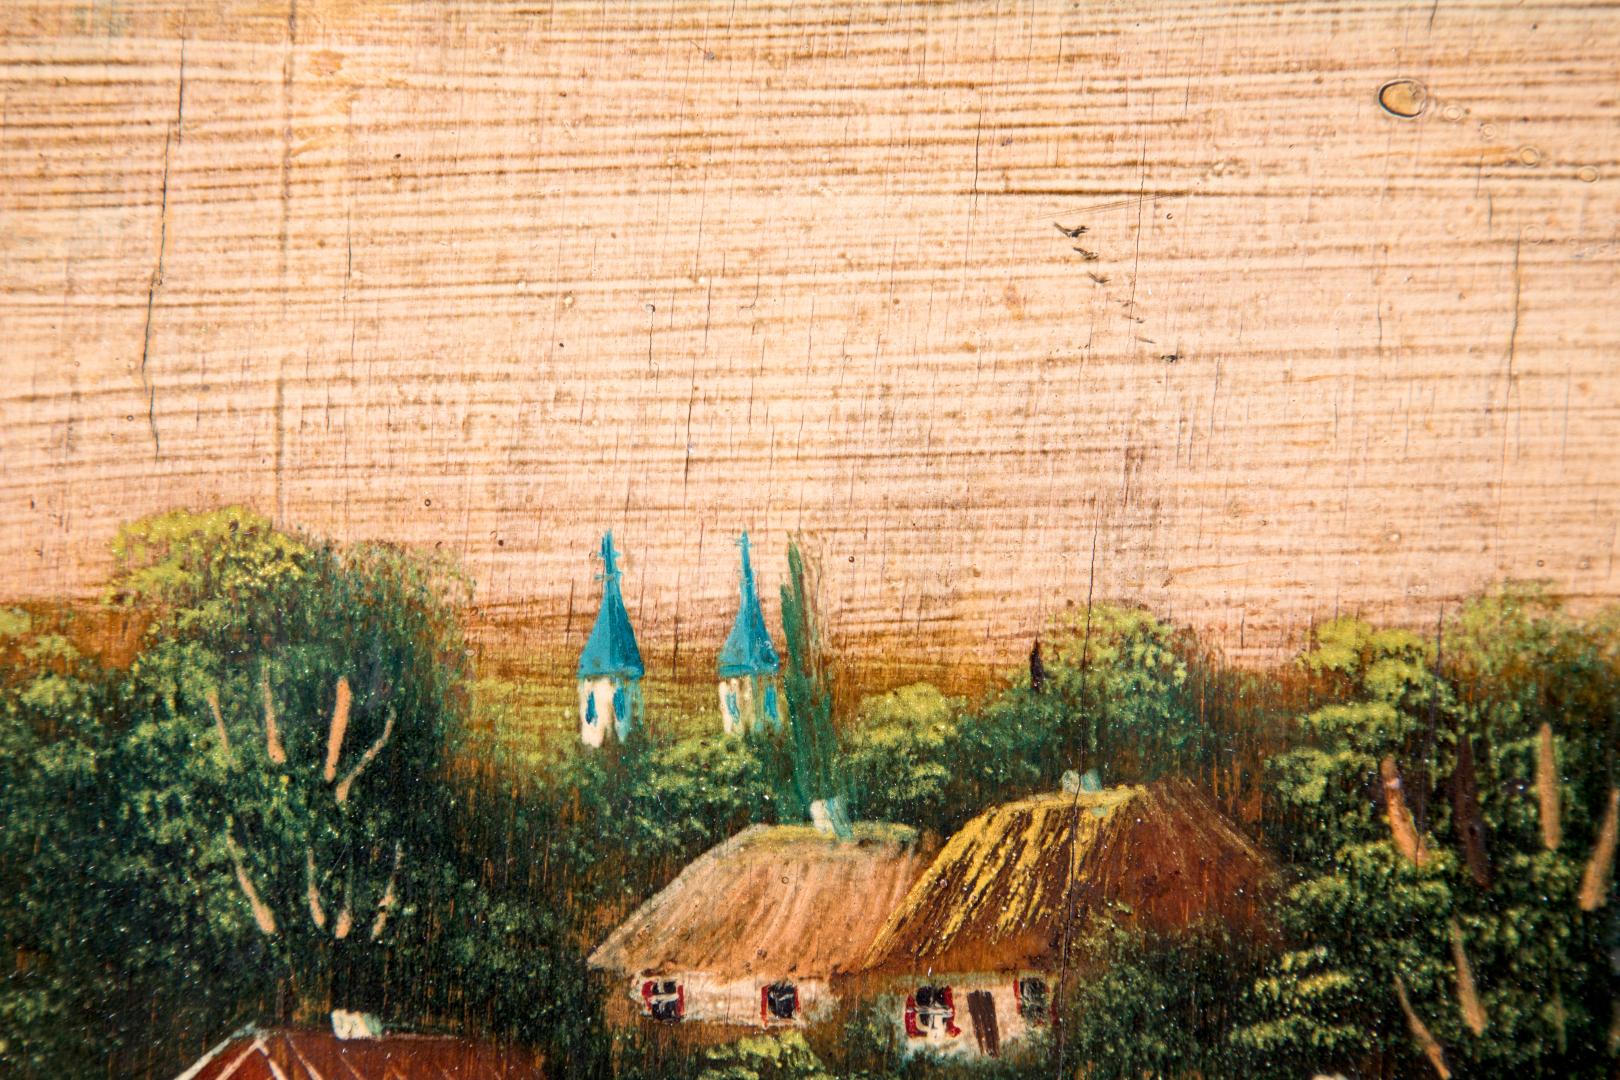 Village of Kyrylivka